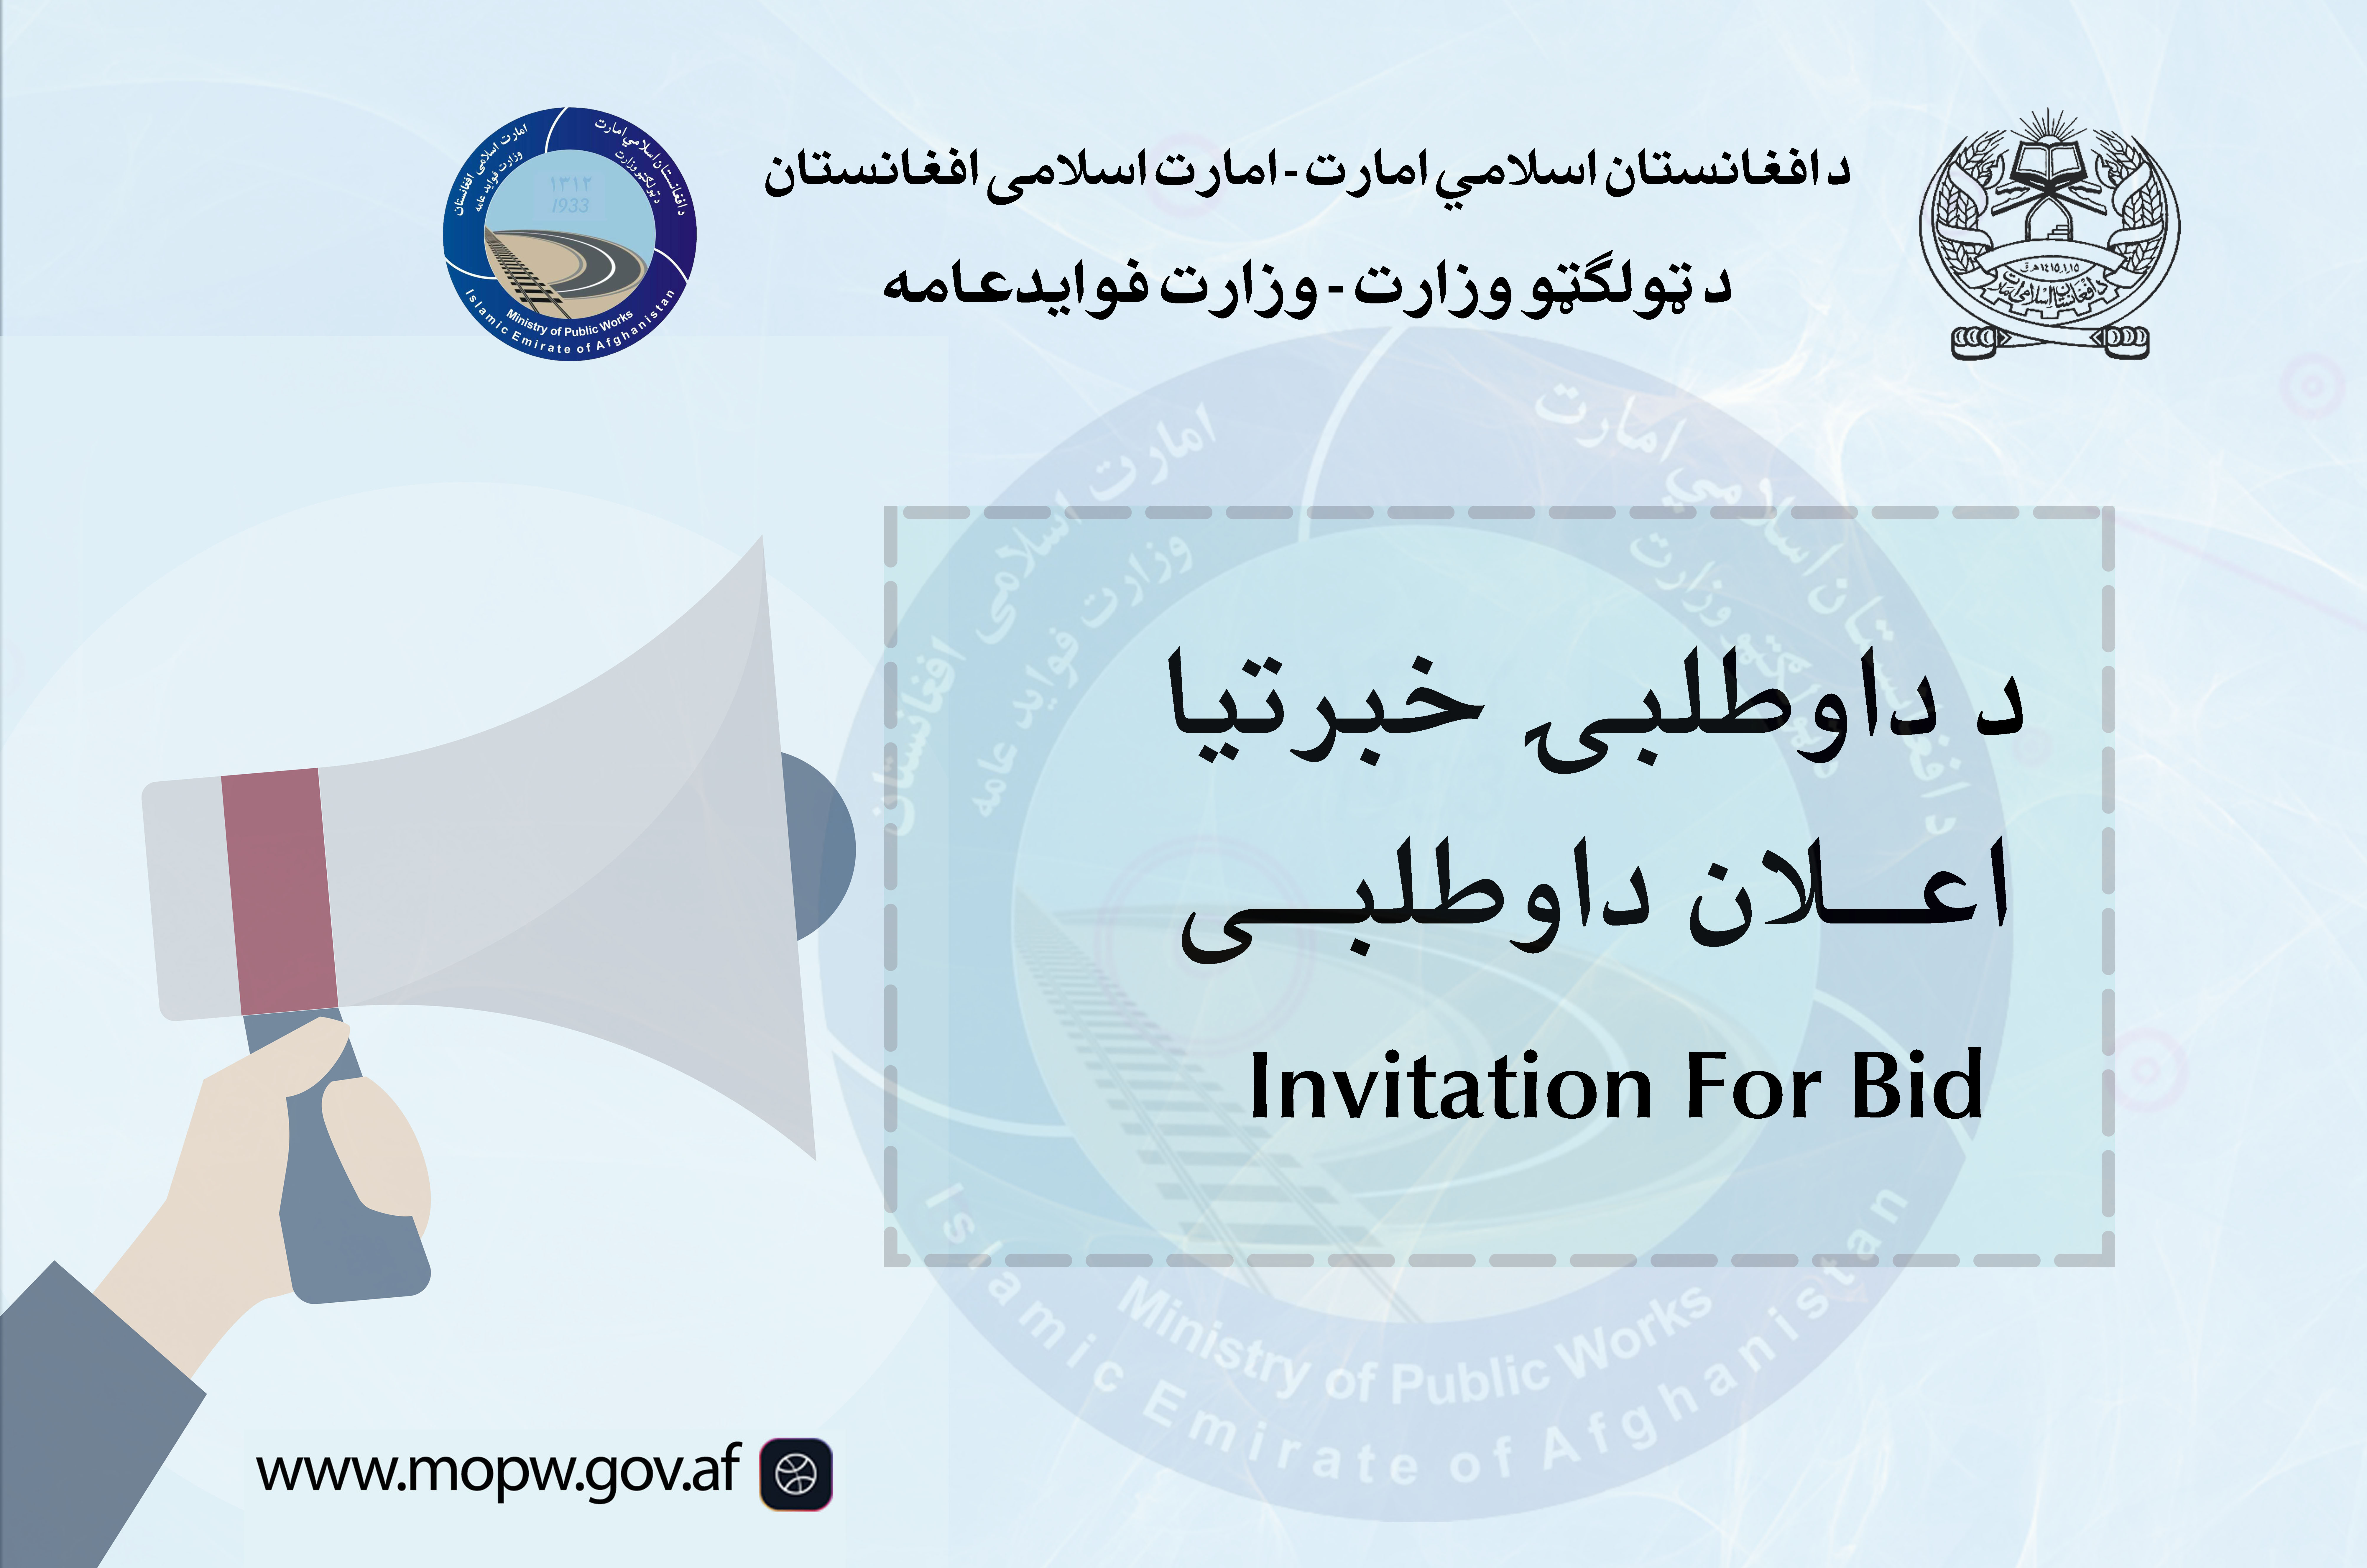  اعلان دعوت به داوطلبی پروژه ساختمان مجدد پل نوی کلی واقع مسیر شاهراه عمومی کابل-کندهار